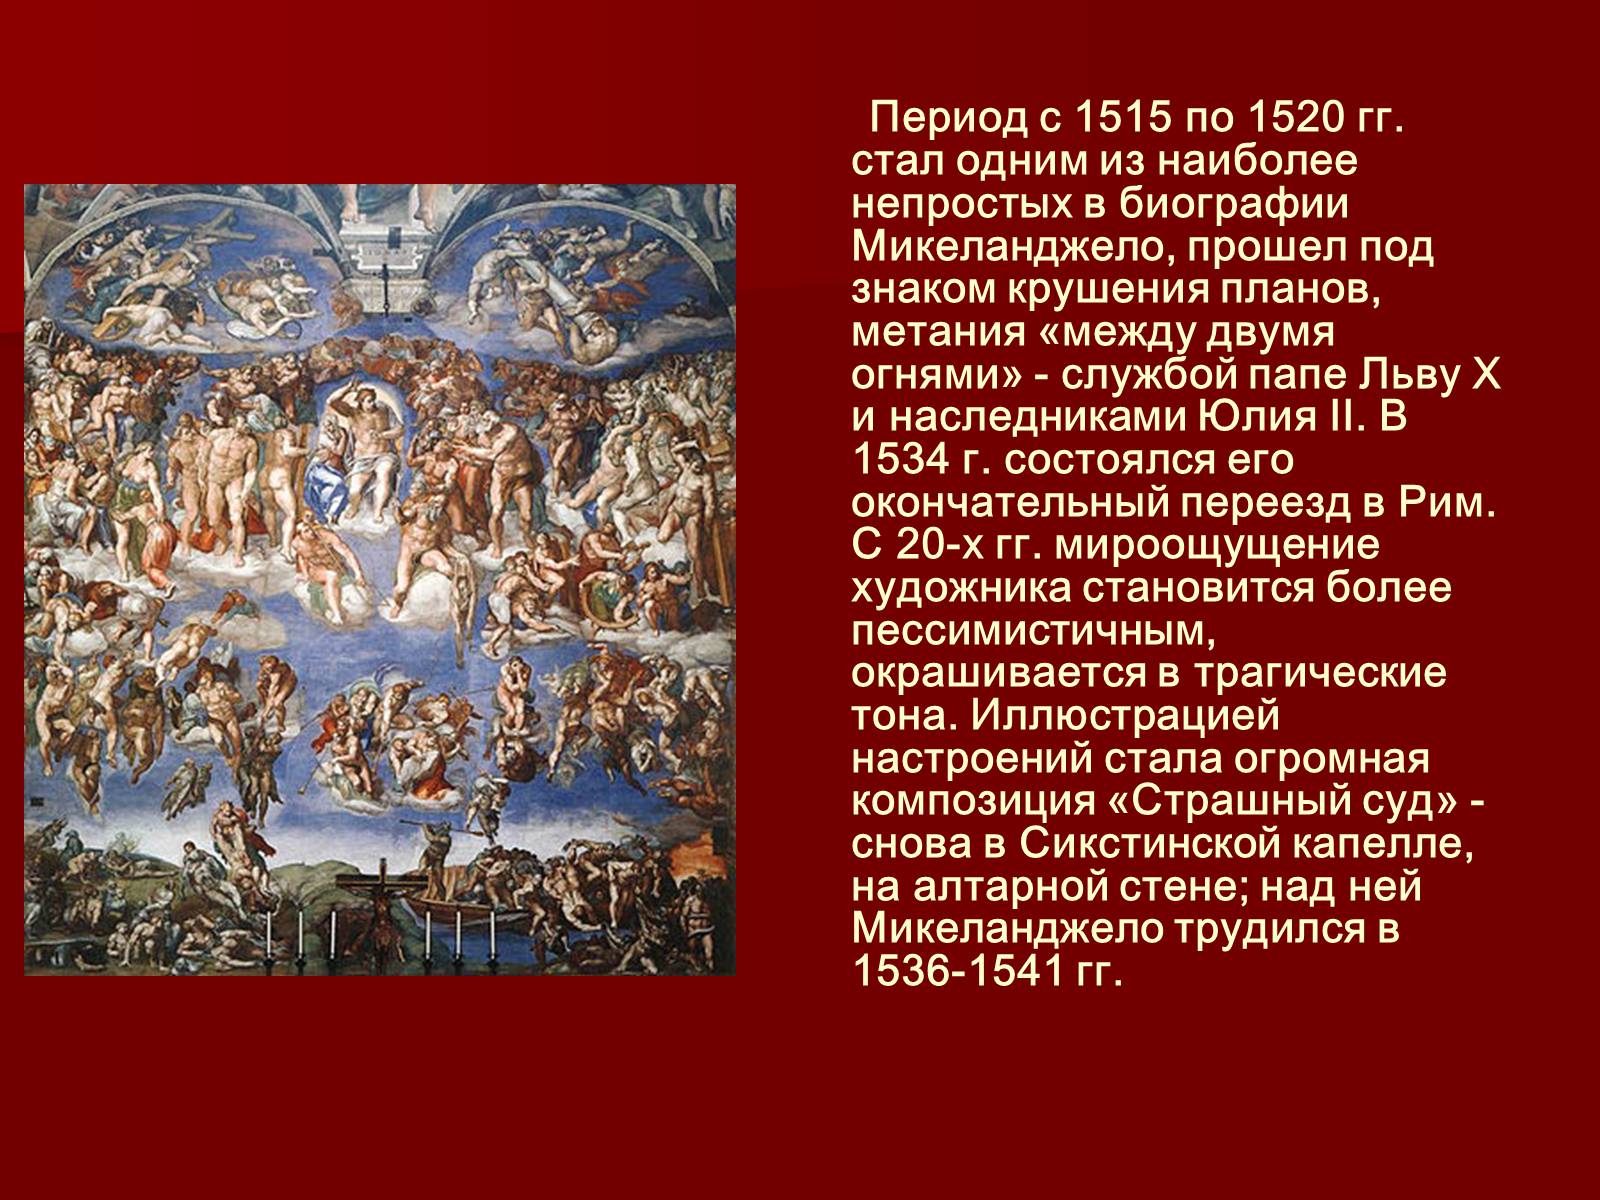 Презентация на тему микеланджело буонарроти